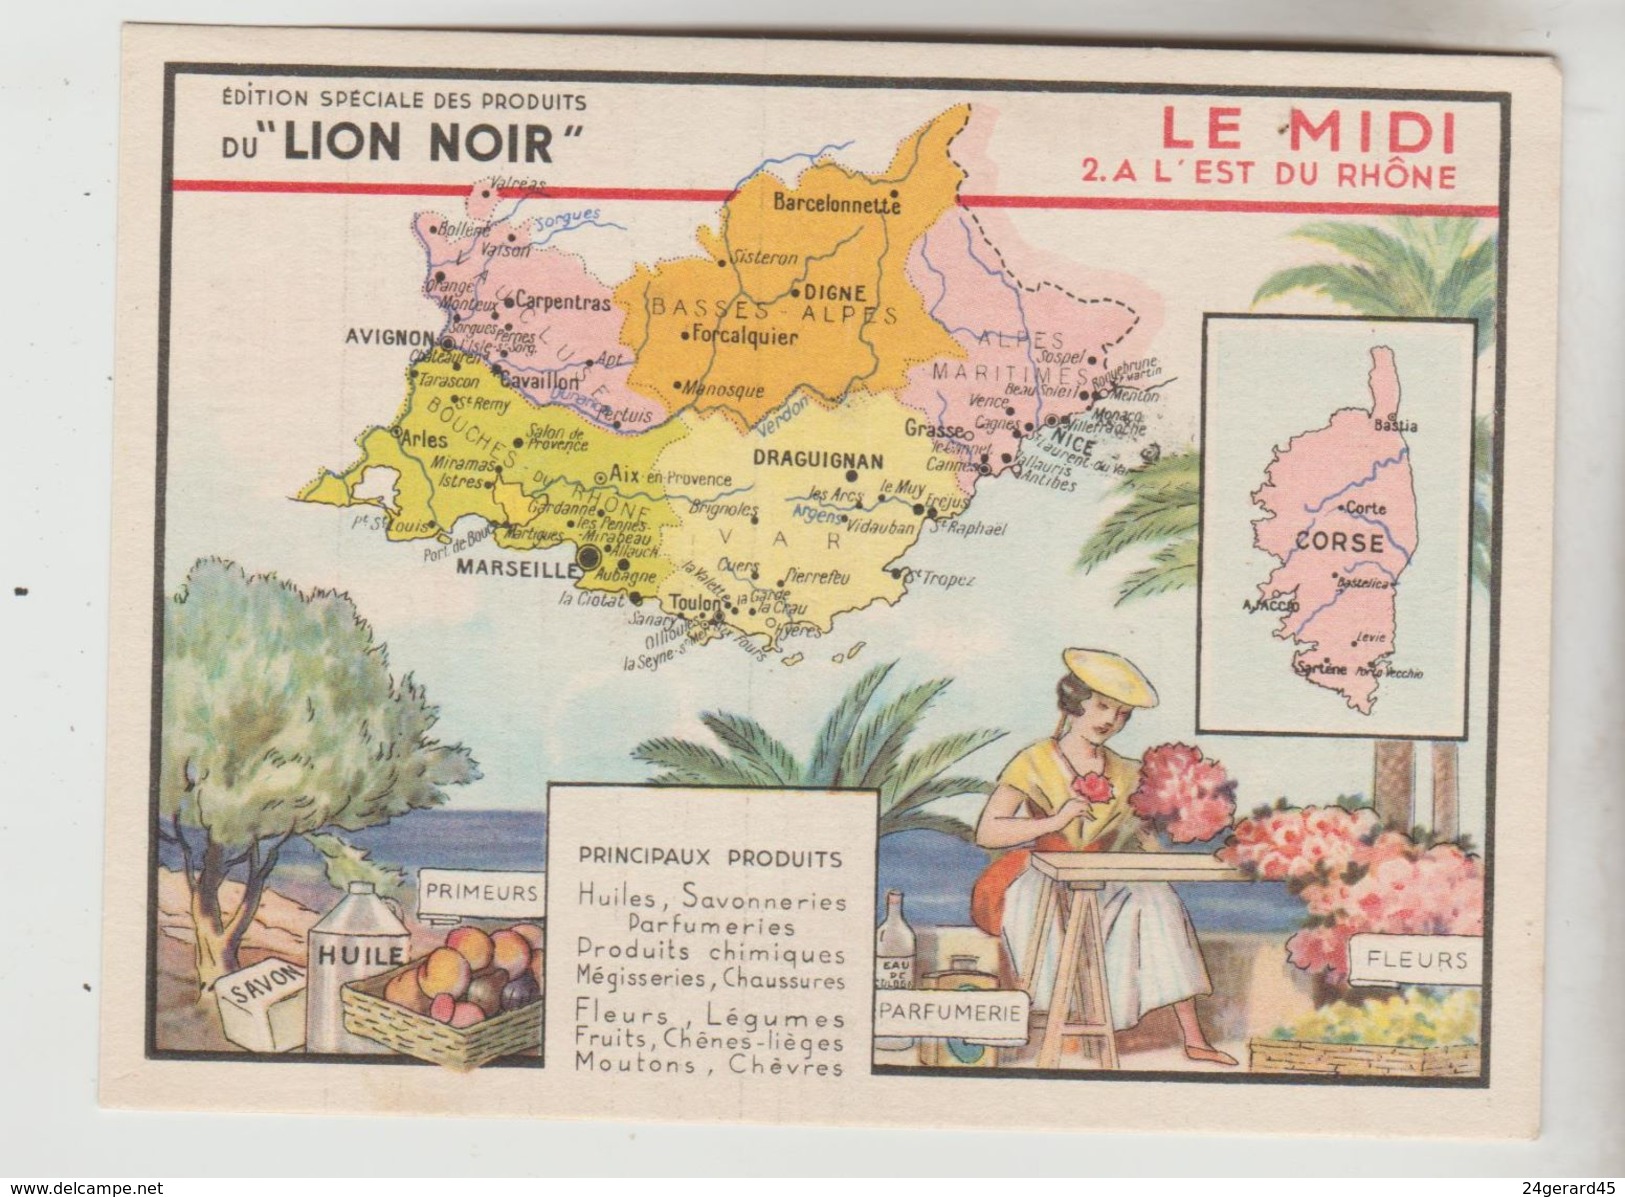 CARTON FORMAT CPSM CARTE GEOGRAPHIQUE PUBLICITAIRE - FRANCE Midi L'Est Du Rhone édition LION NOIR Fleurs Parfums Primeur - Maps